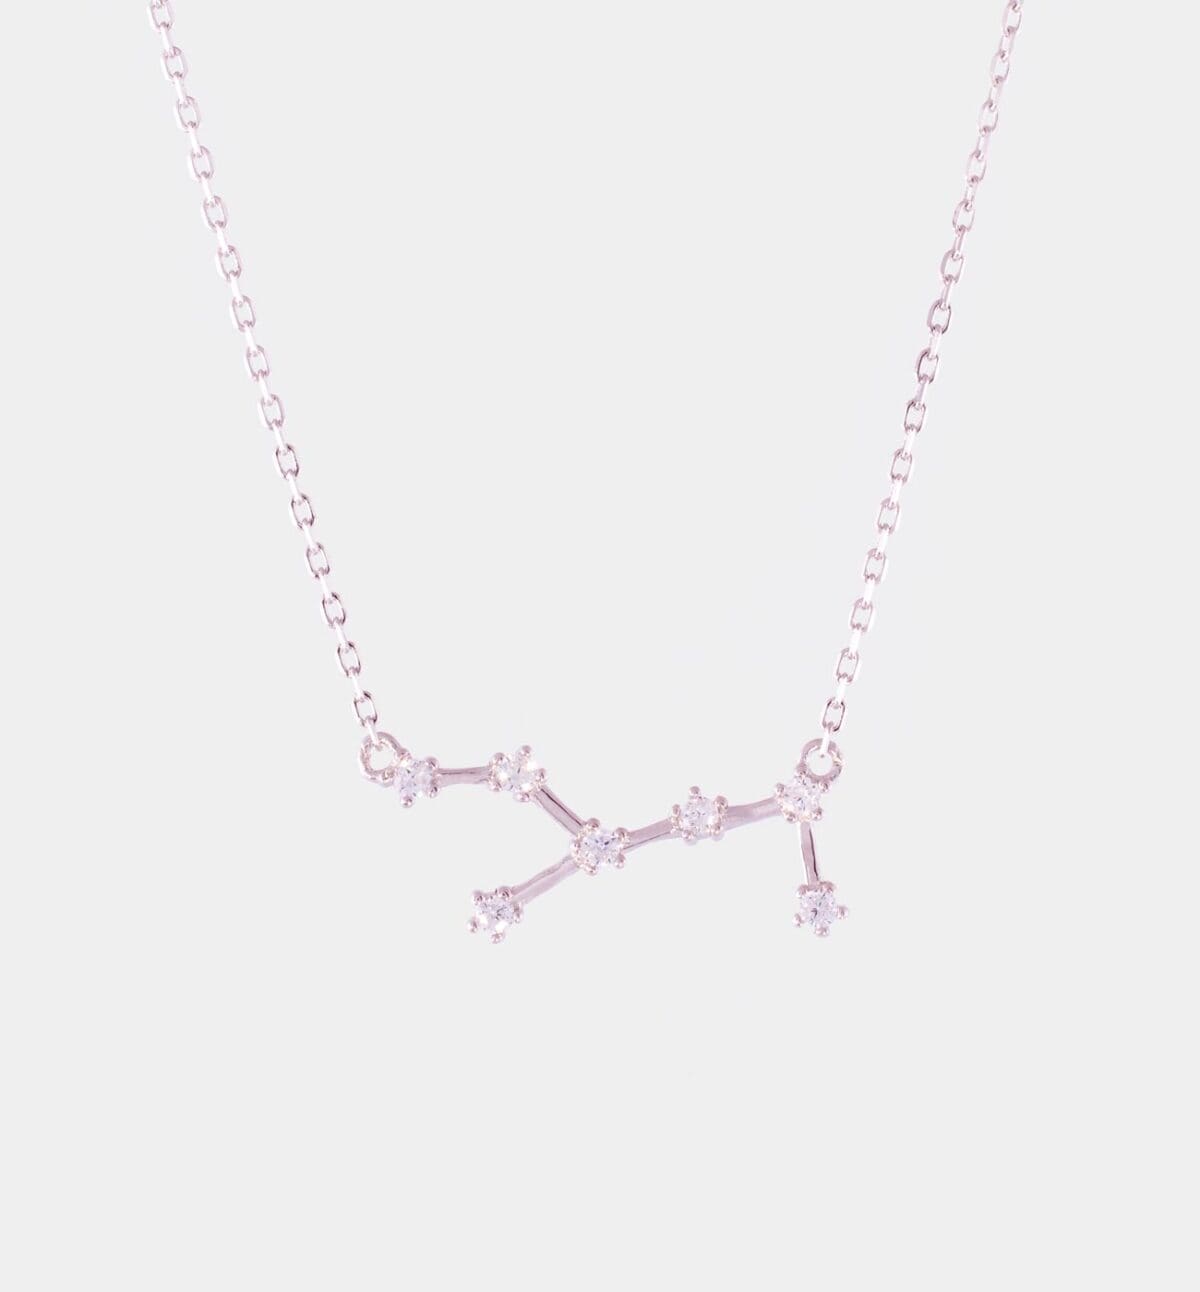 Sternkonstellation des Sternzeichen Jungfrau in Silber